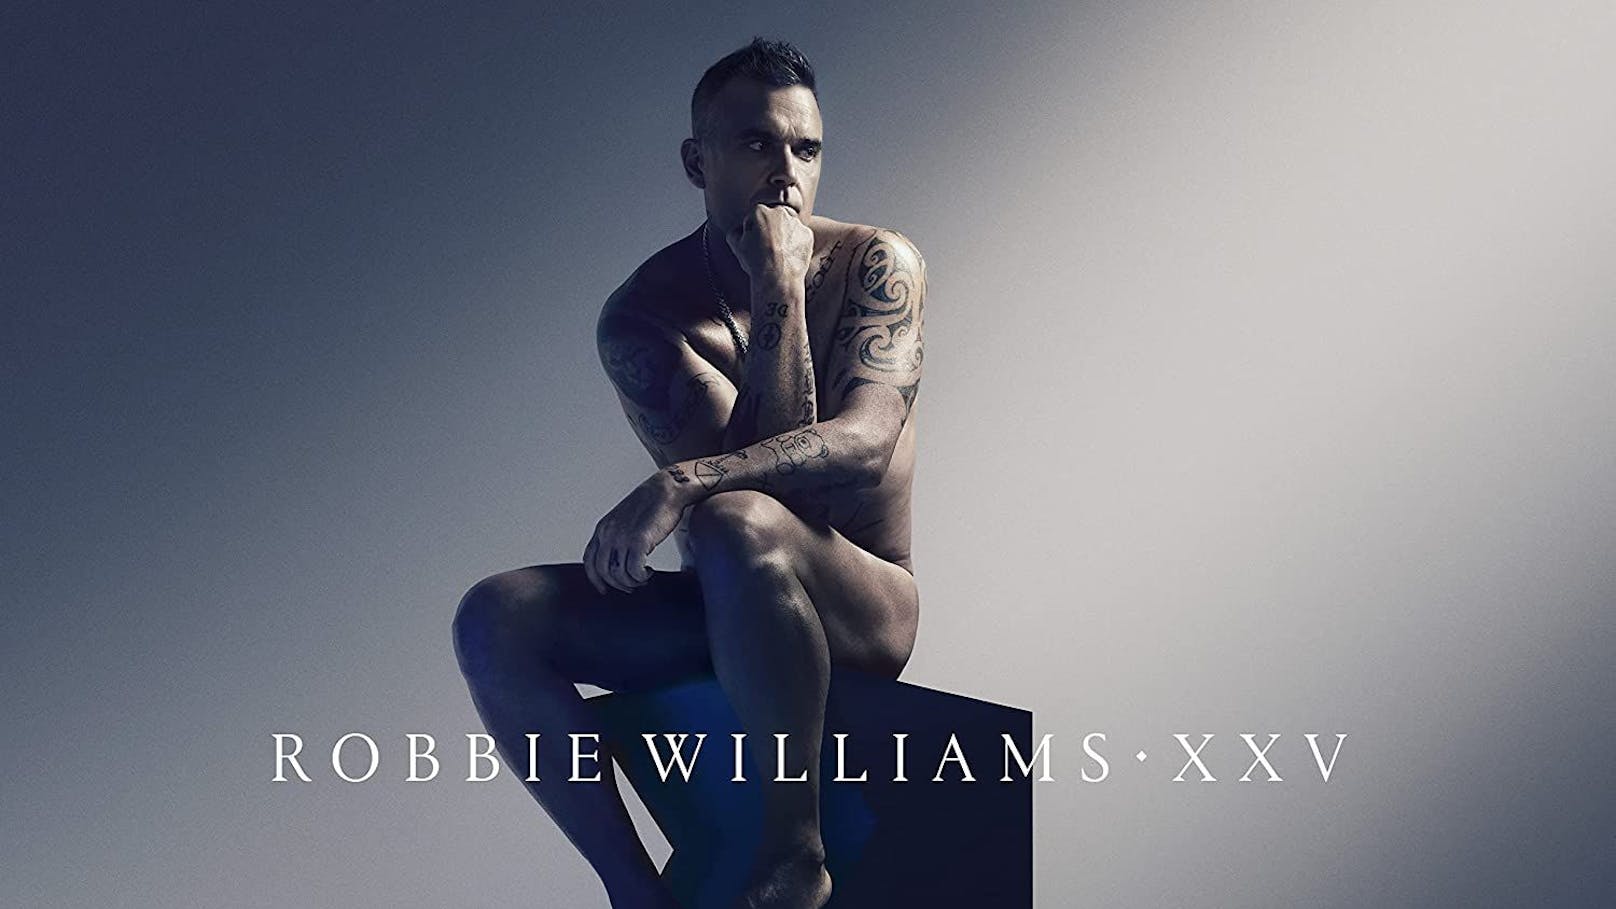 Am Cover posiert Robbie Williams als Rodins "Der Denker".